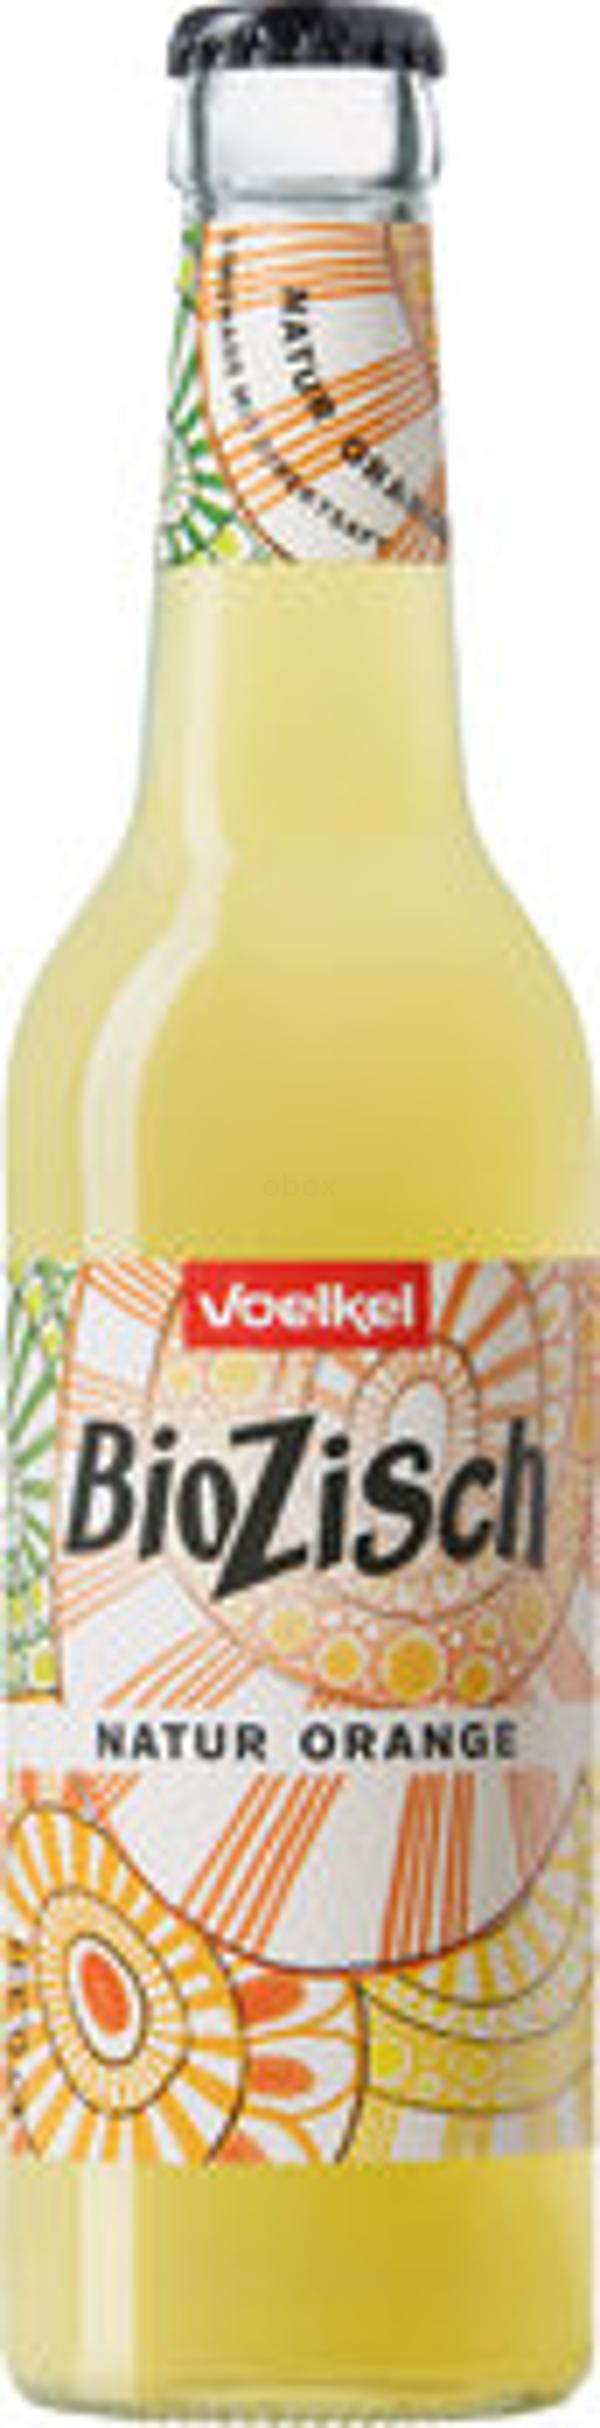 Produktfoto zu BioZisch Natur-Orange, 0,33 l